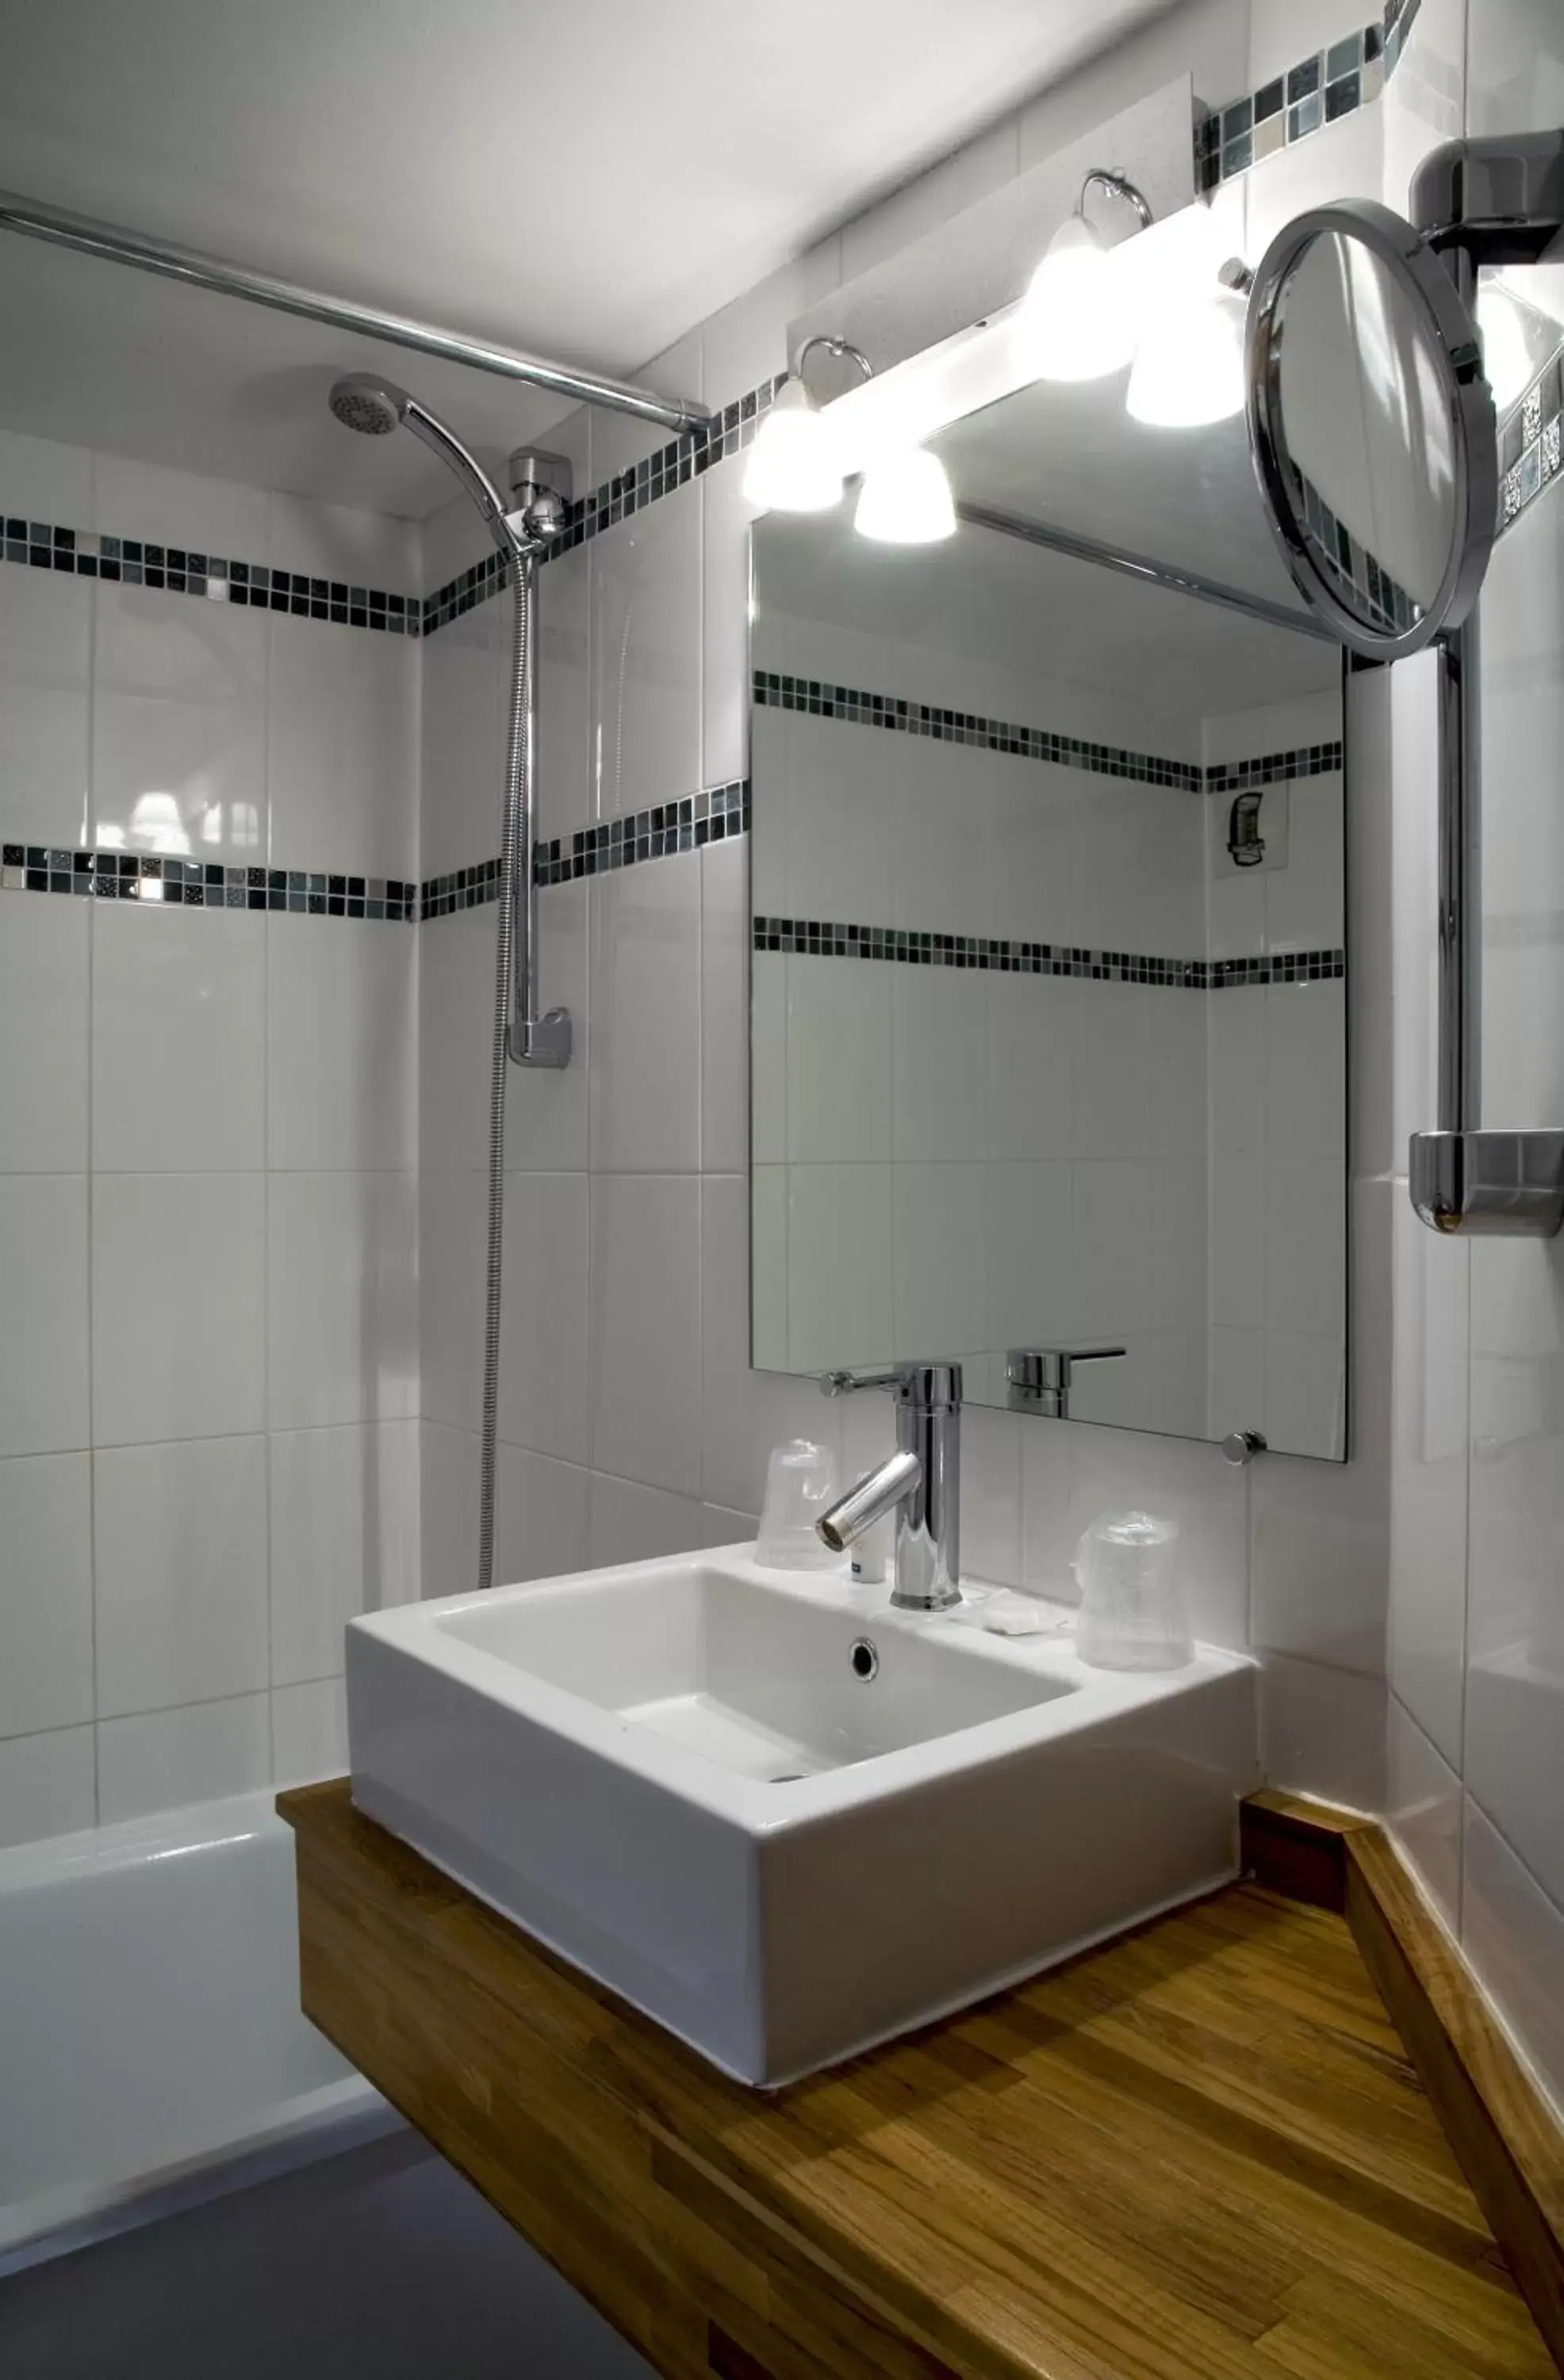 Decorative detail, Bathroom in Kyriad Lille Est - Villeneuve d'Ascq